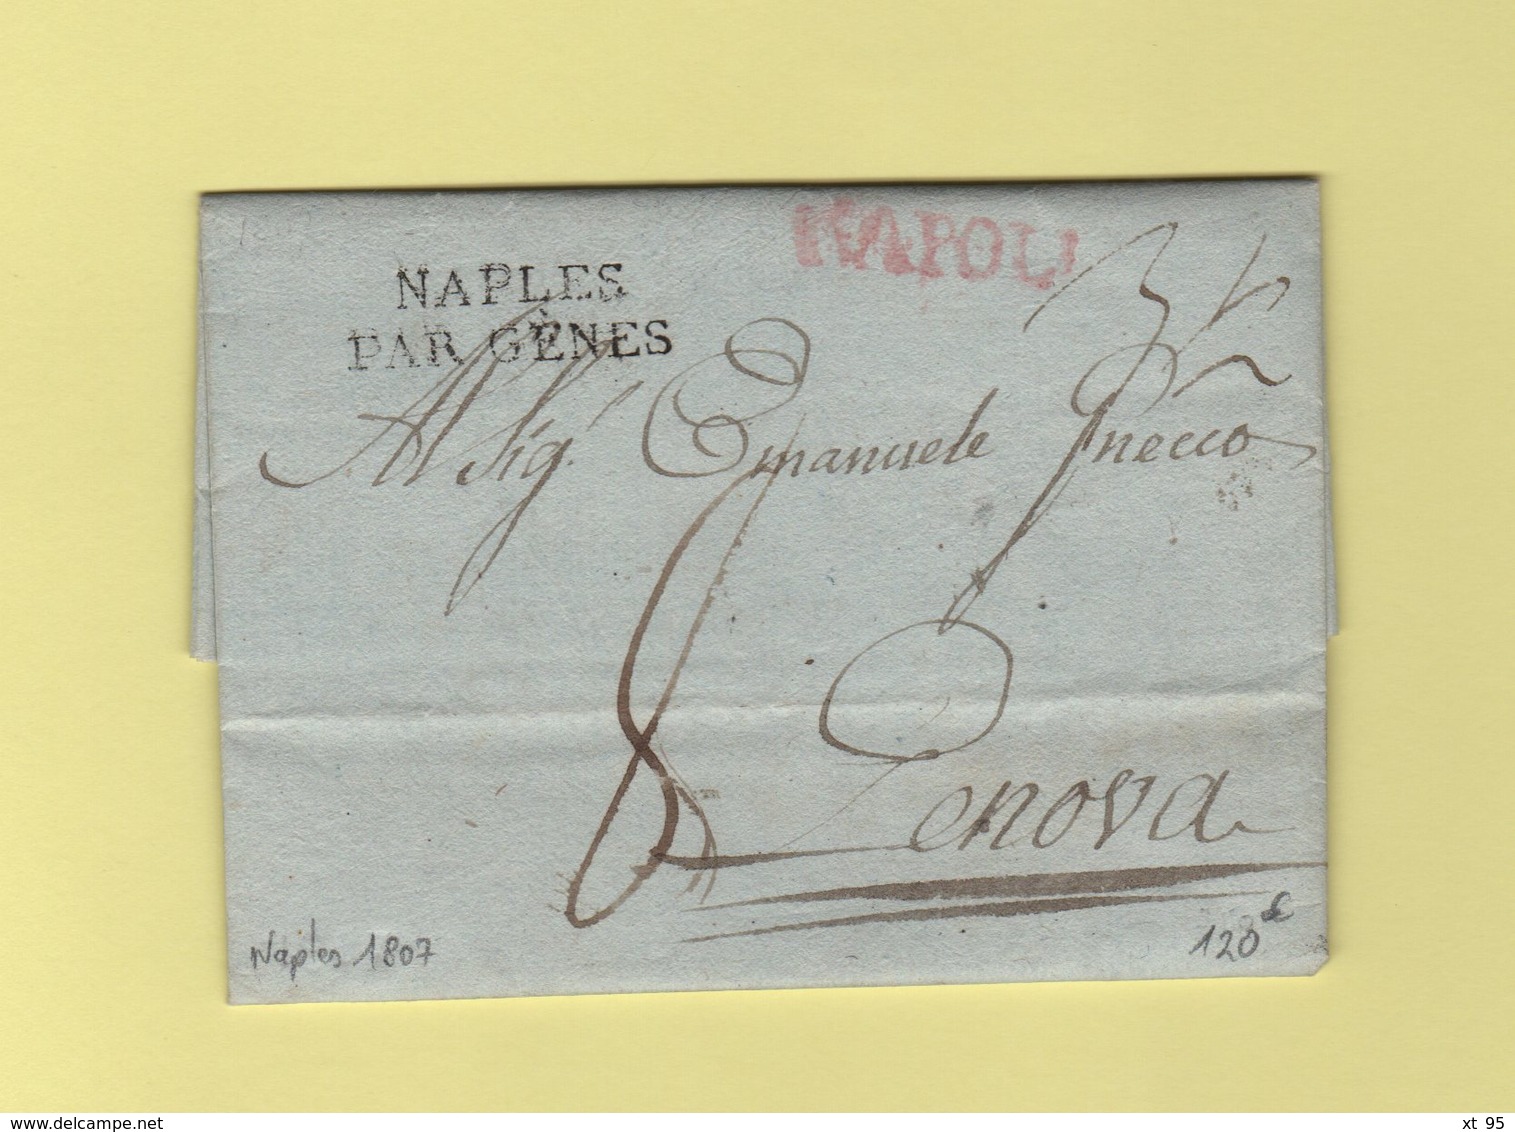 Naples Par Genes - Napoli - Lettre De Naples Pour Genes - 1807 - Marque D Entree - 1792-1815: Départements Conquis